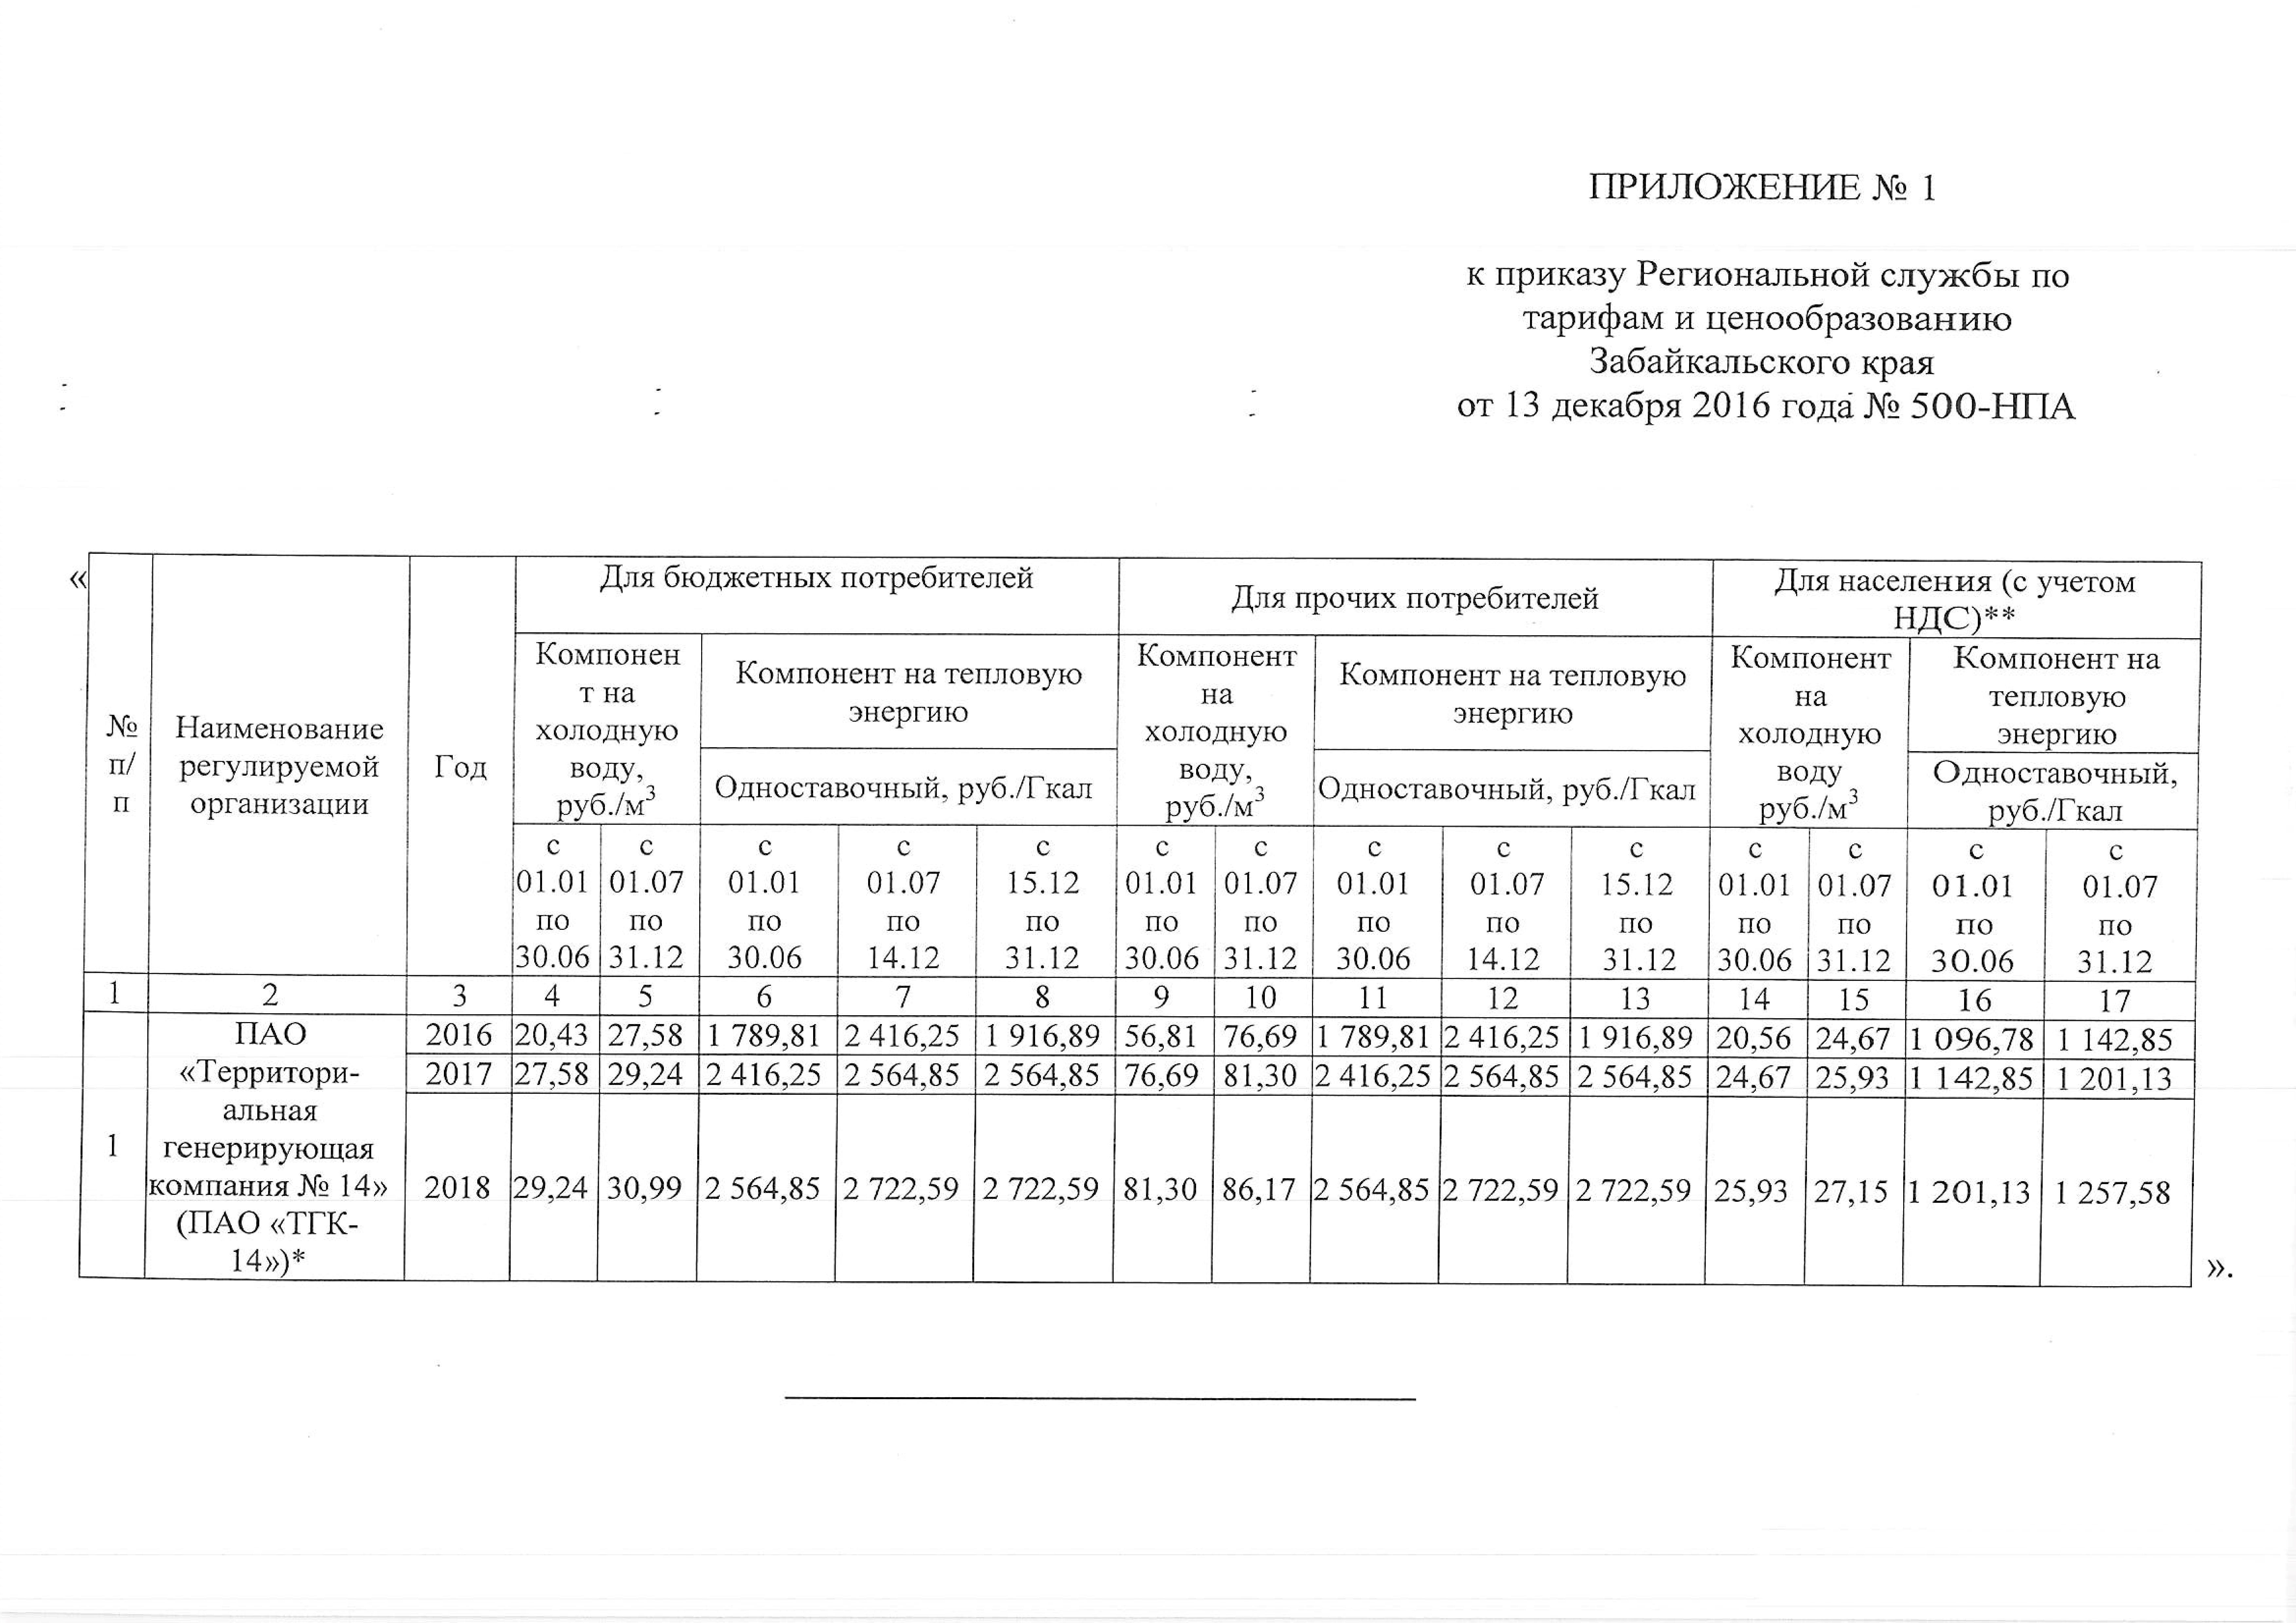 Тариф ТГК-14 вопреки обещаниям Ждановой с 1 января увеличится на 35%